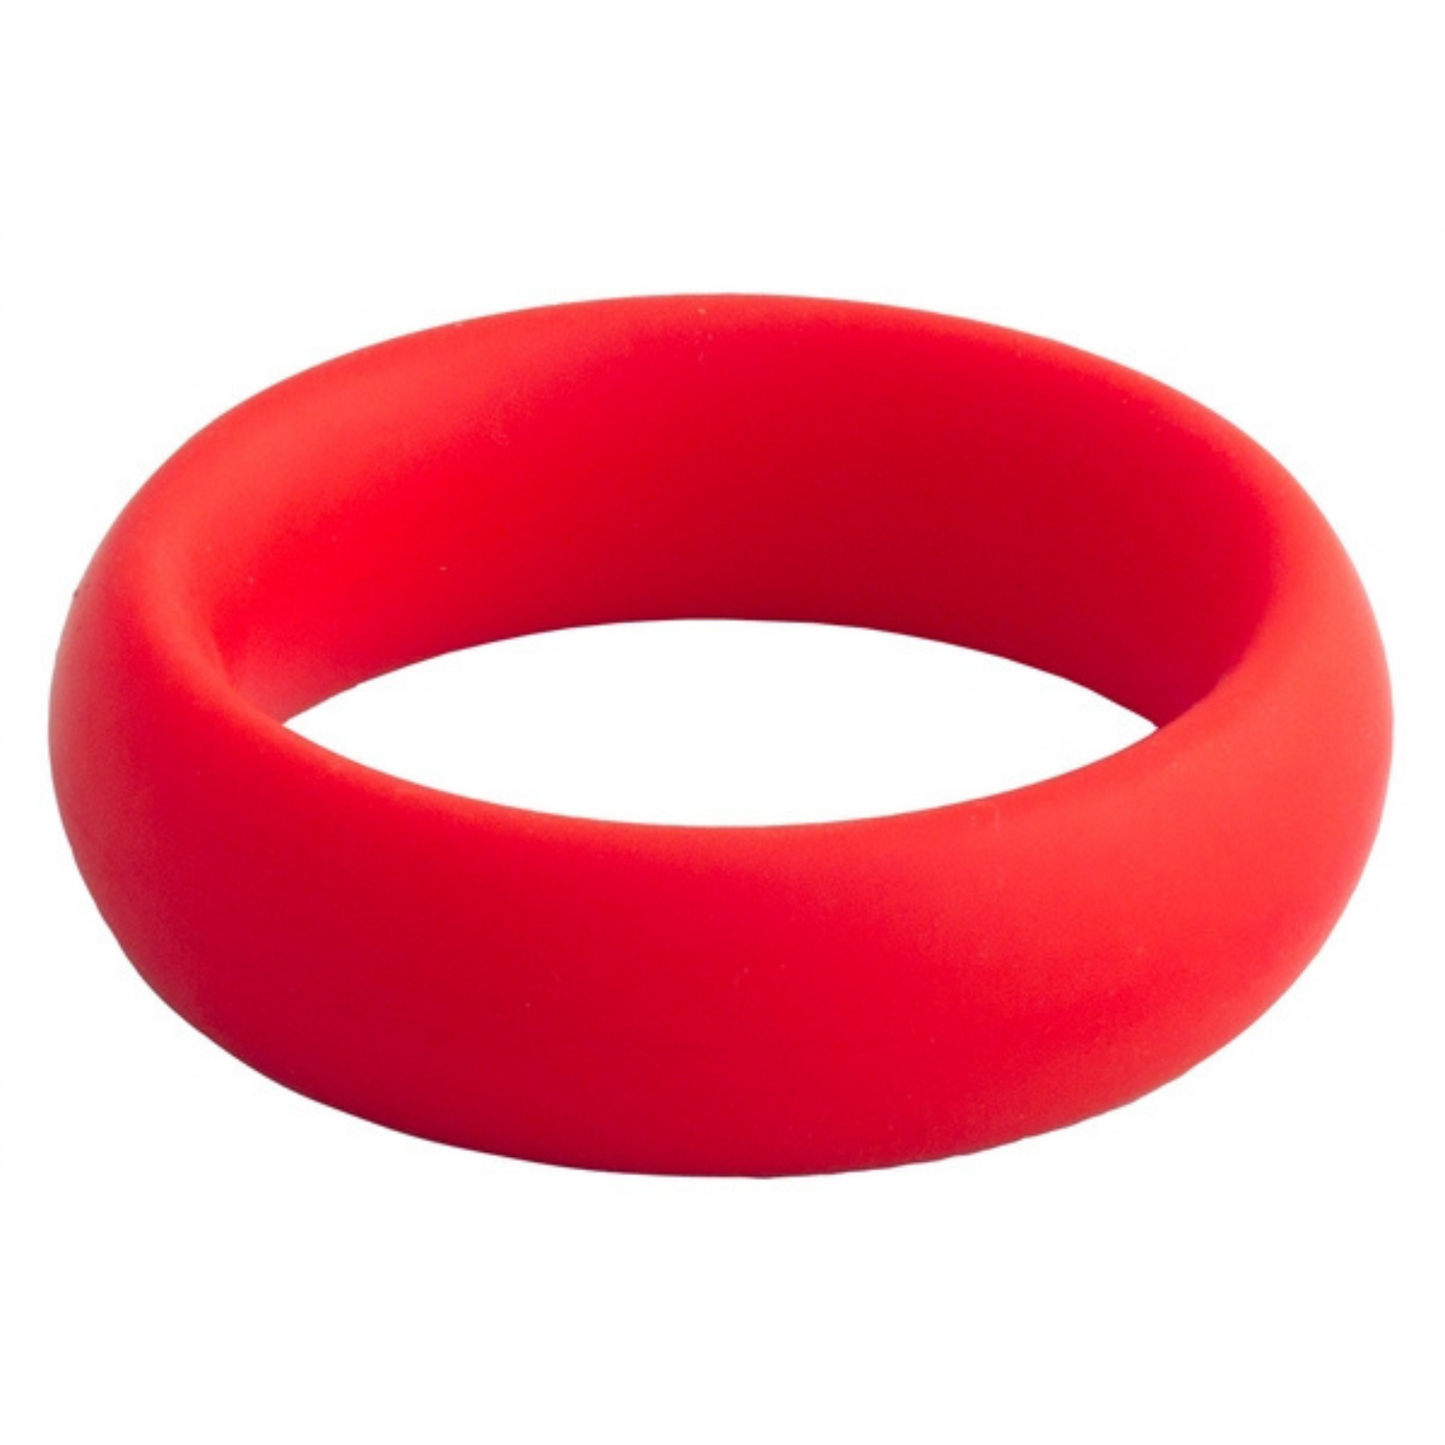 Rode donut cock ring met een diameter van 50 mm van Mister B, te koop bij Flavourez.